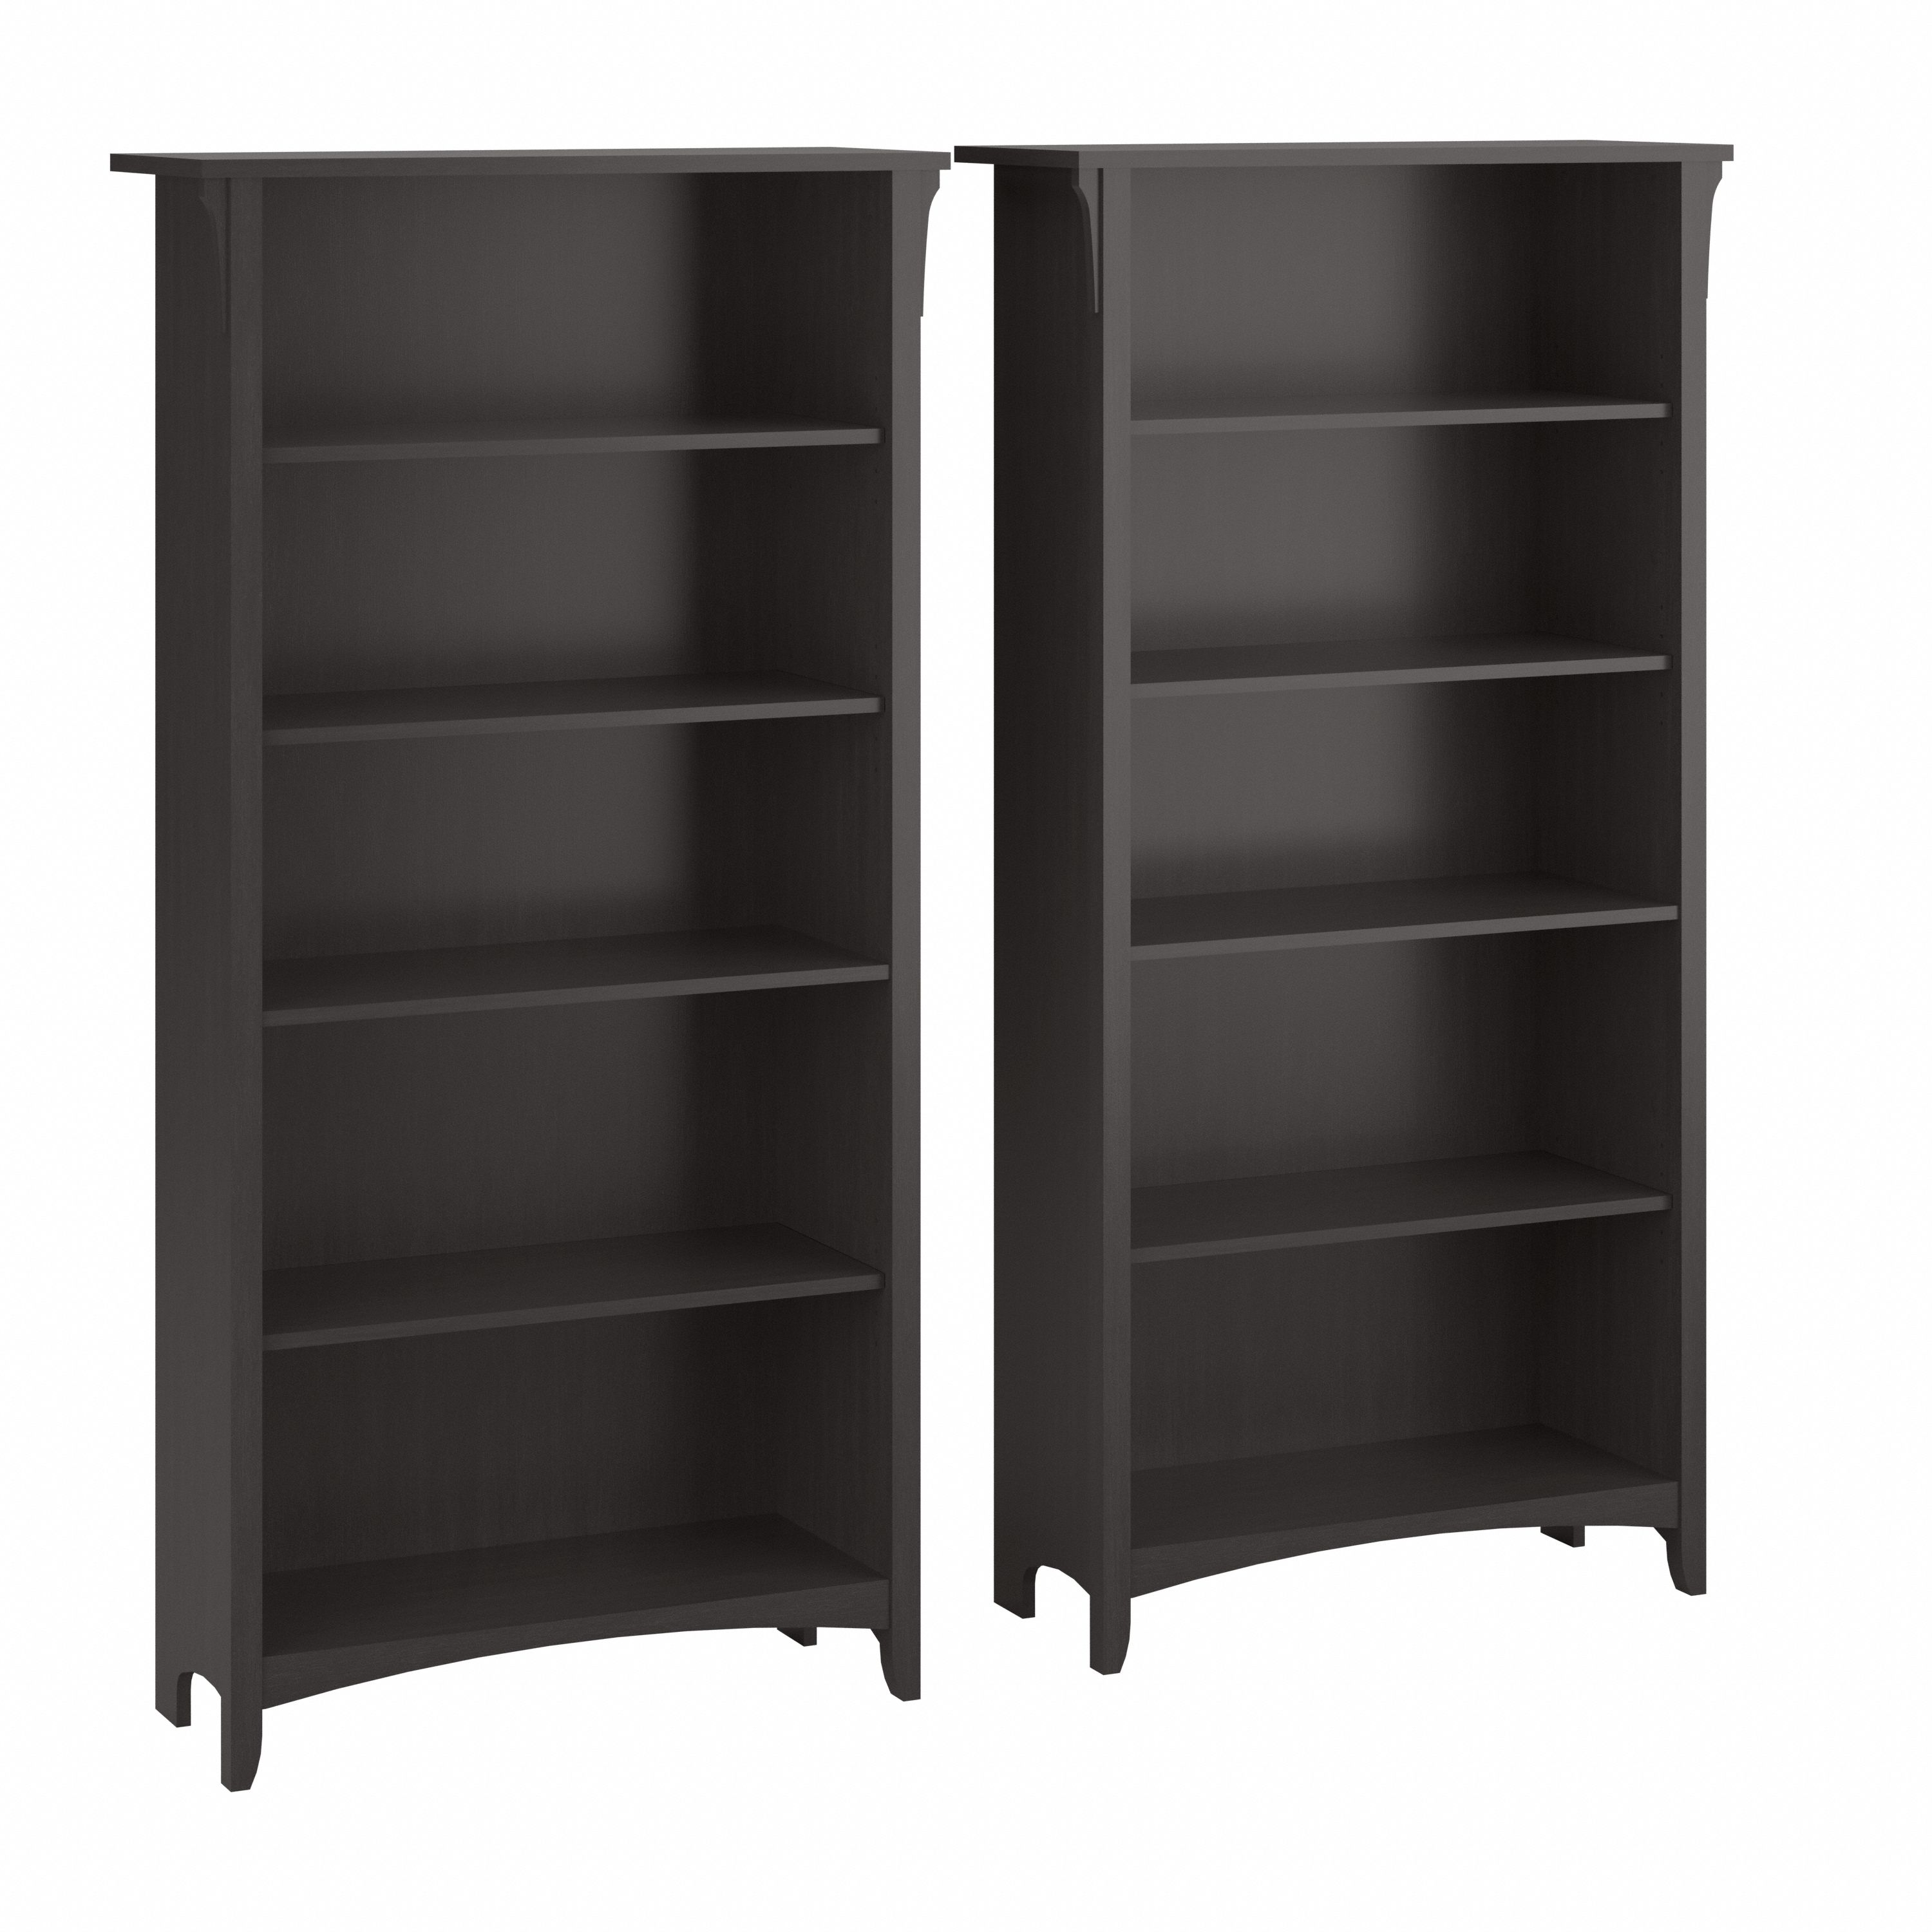 Shop Bush Furniture Salinas Tall 5 Shelf Bookcase - Set of 2 02 SAL036VB #color_vintage black